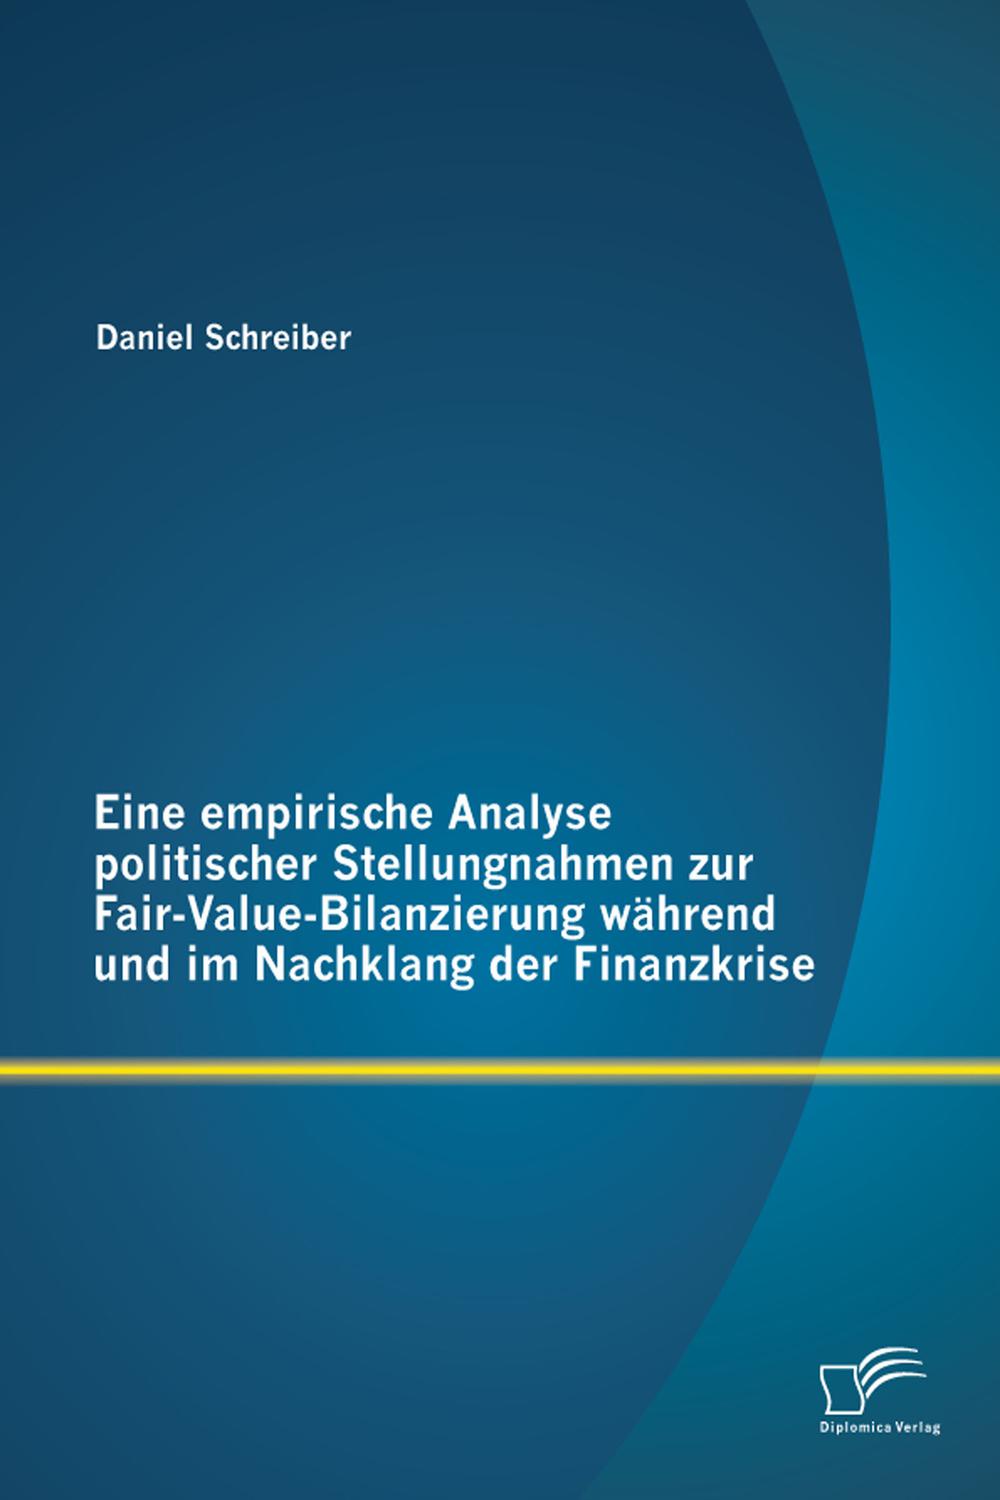 Eine empirische Analyse politischer Stellungnahmen zur Fair-Value-Bilanzierung während und im Nachklang der Finanzkrise - Daniel Schreiber